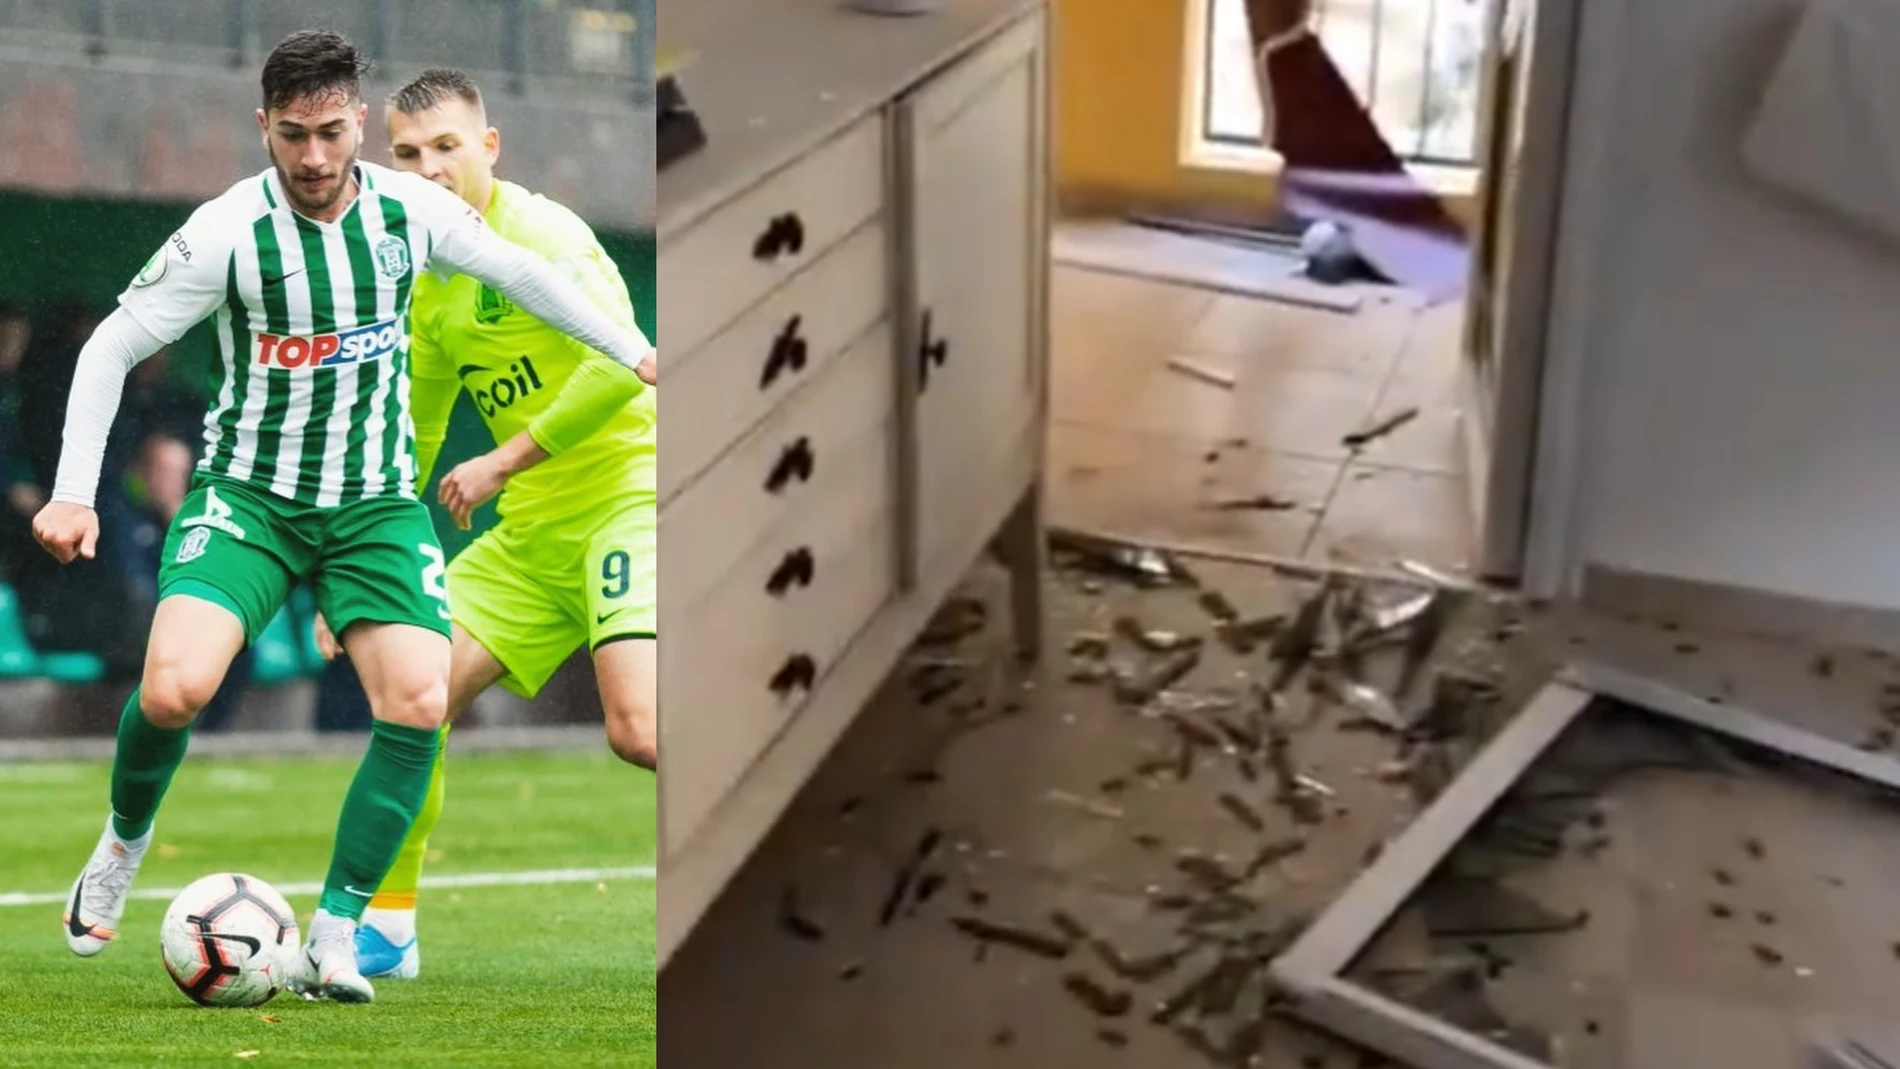 Un futbolista brasileño que juega en Israel muestra su casa destruida por misil de Hamás: "Actúan como animales"